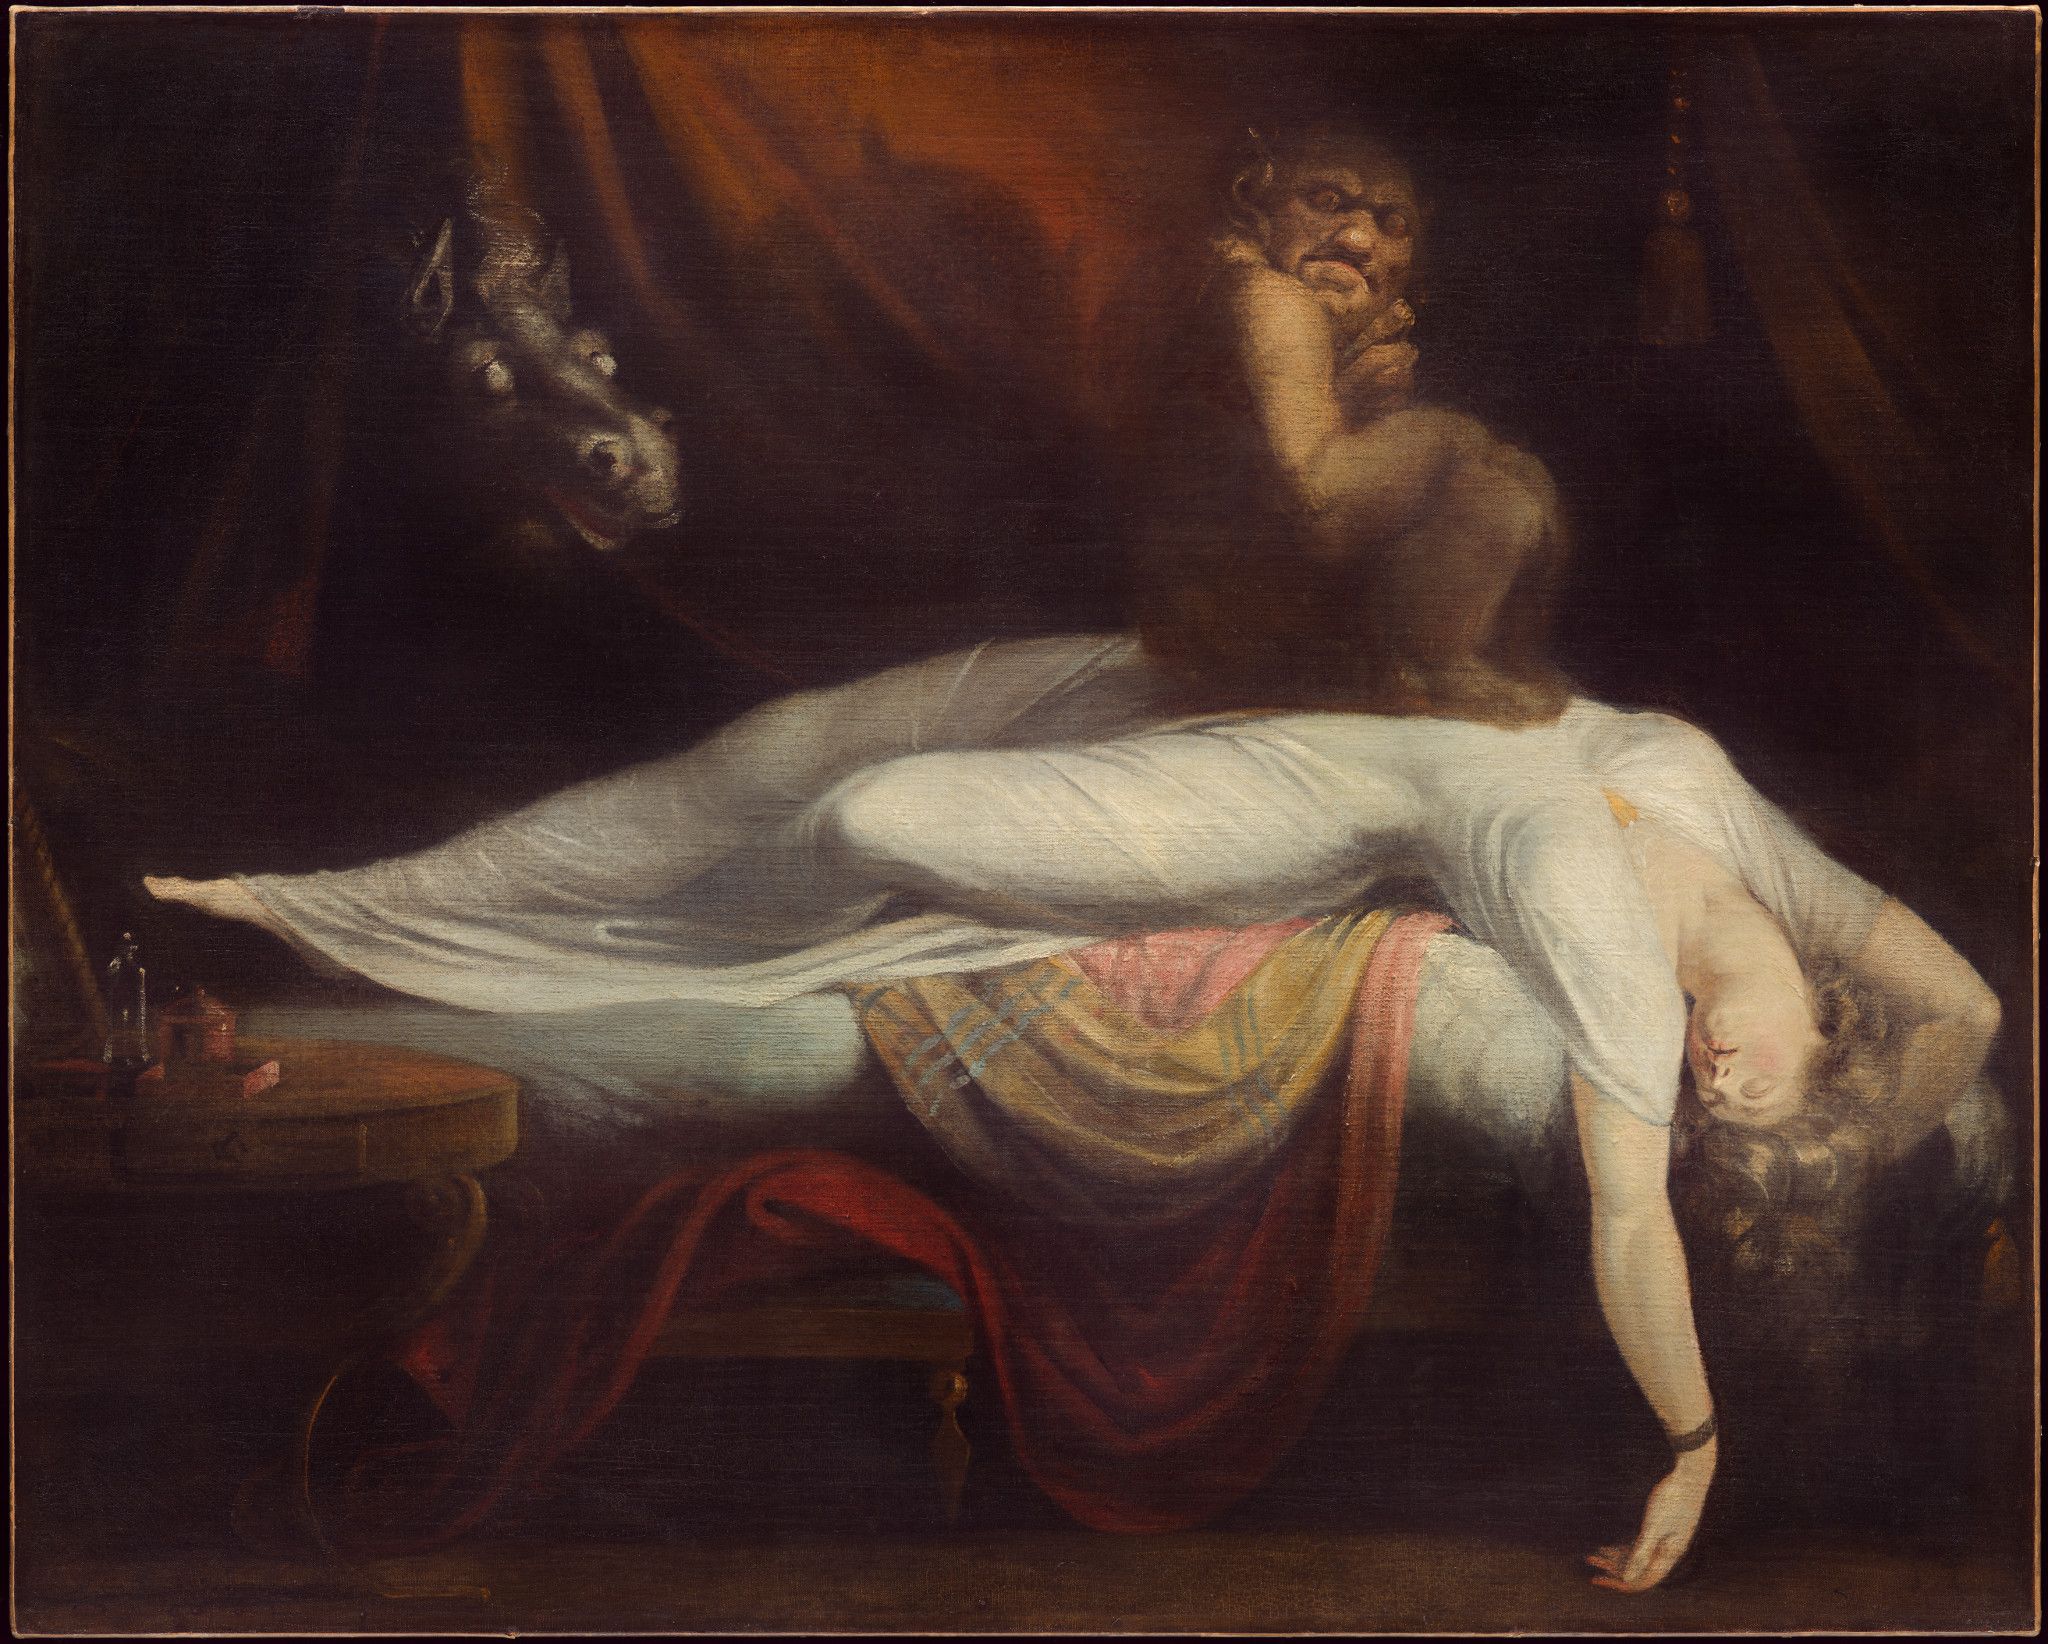 Европейский живописец Иоганн Фюсли написал картину «Ночной кошмар» в конце XVIII века. Вероятно, вдохновившись рассказами про сонный паралич